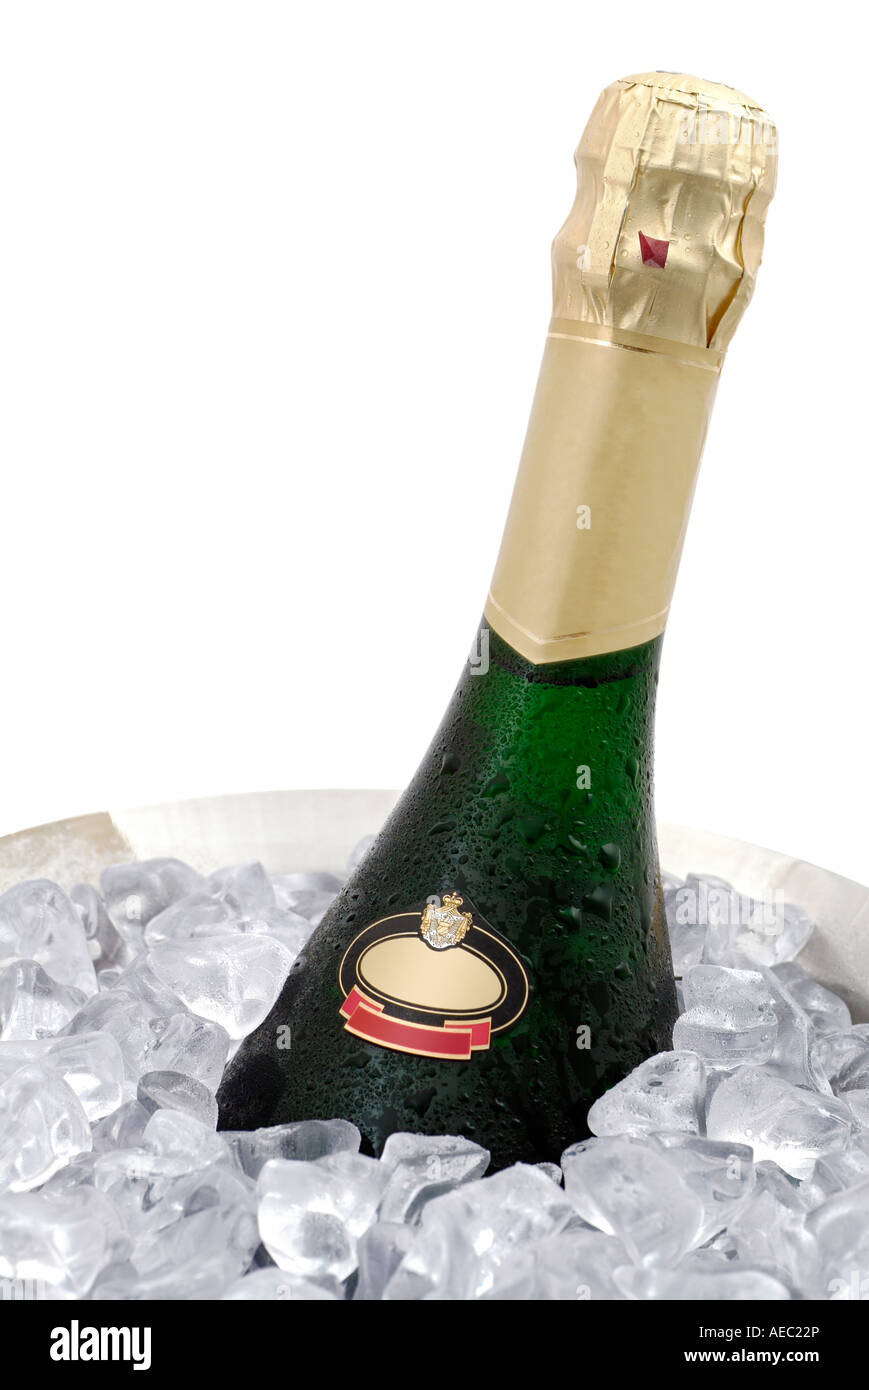 Bouteille de champagne dans un seau à glace Banque D'Images